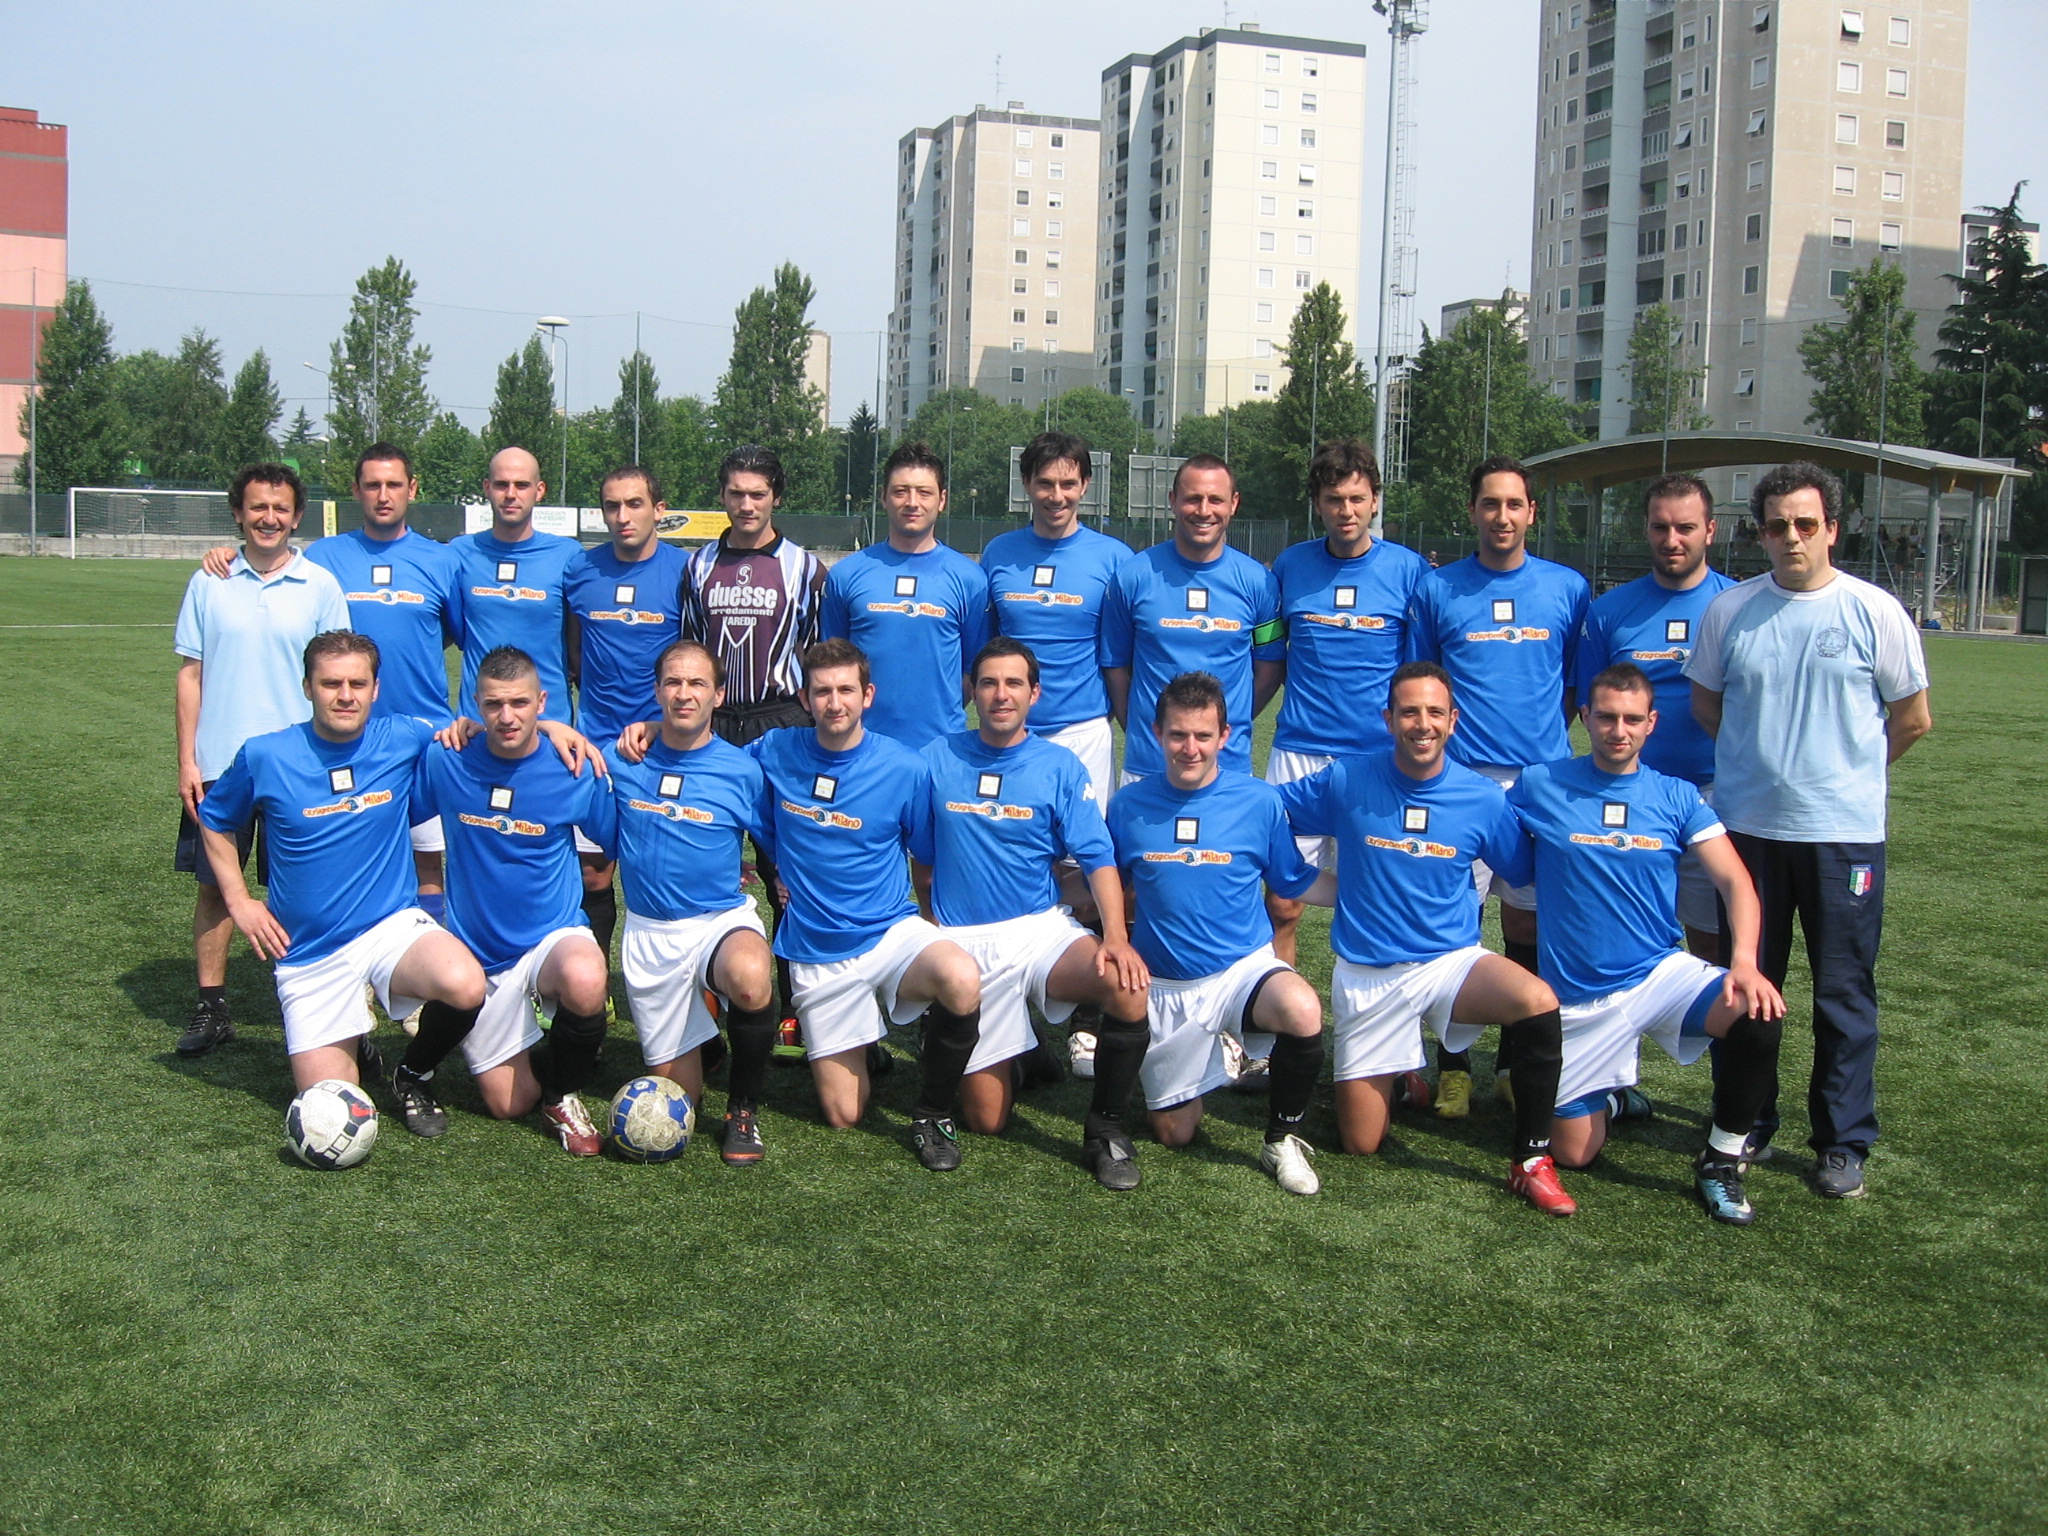 La squadra Campione Provinciale 2010/11